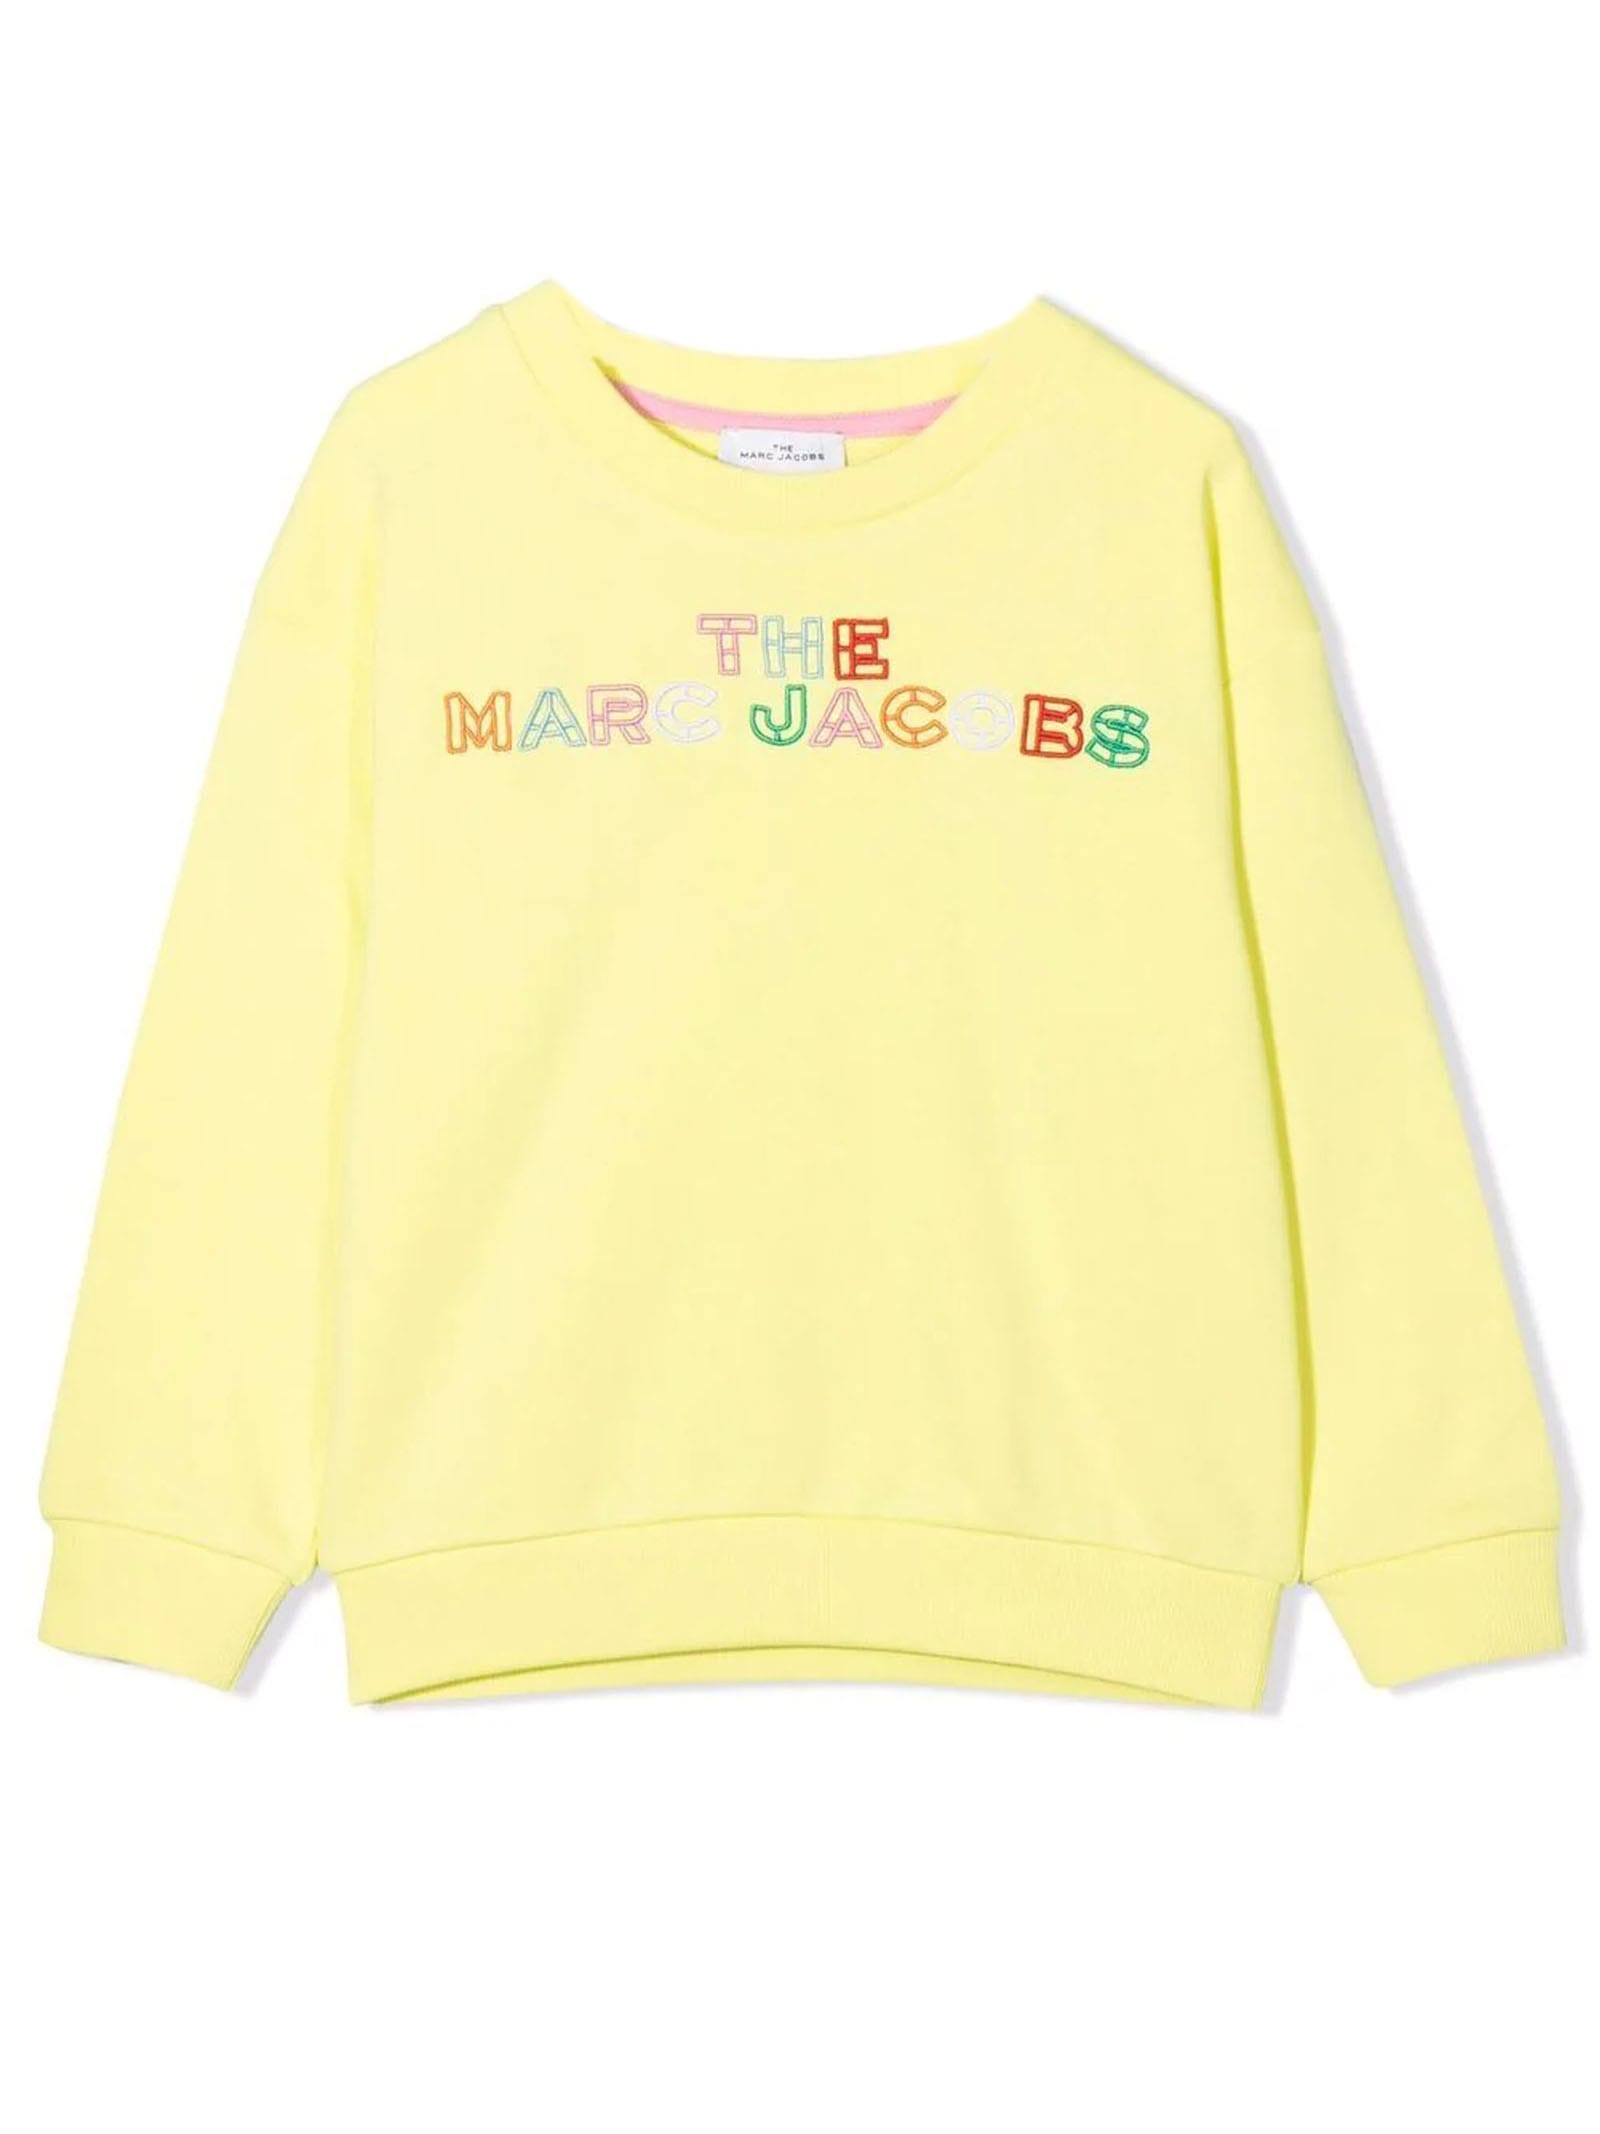 Marc Jacobs Yellow Cotton Sweatshirt